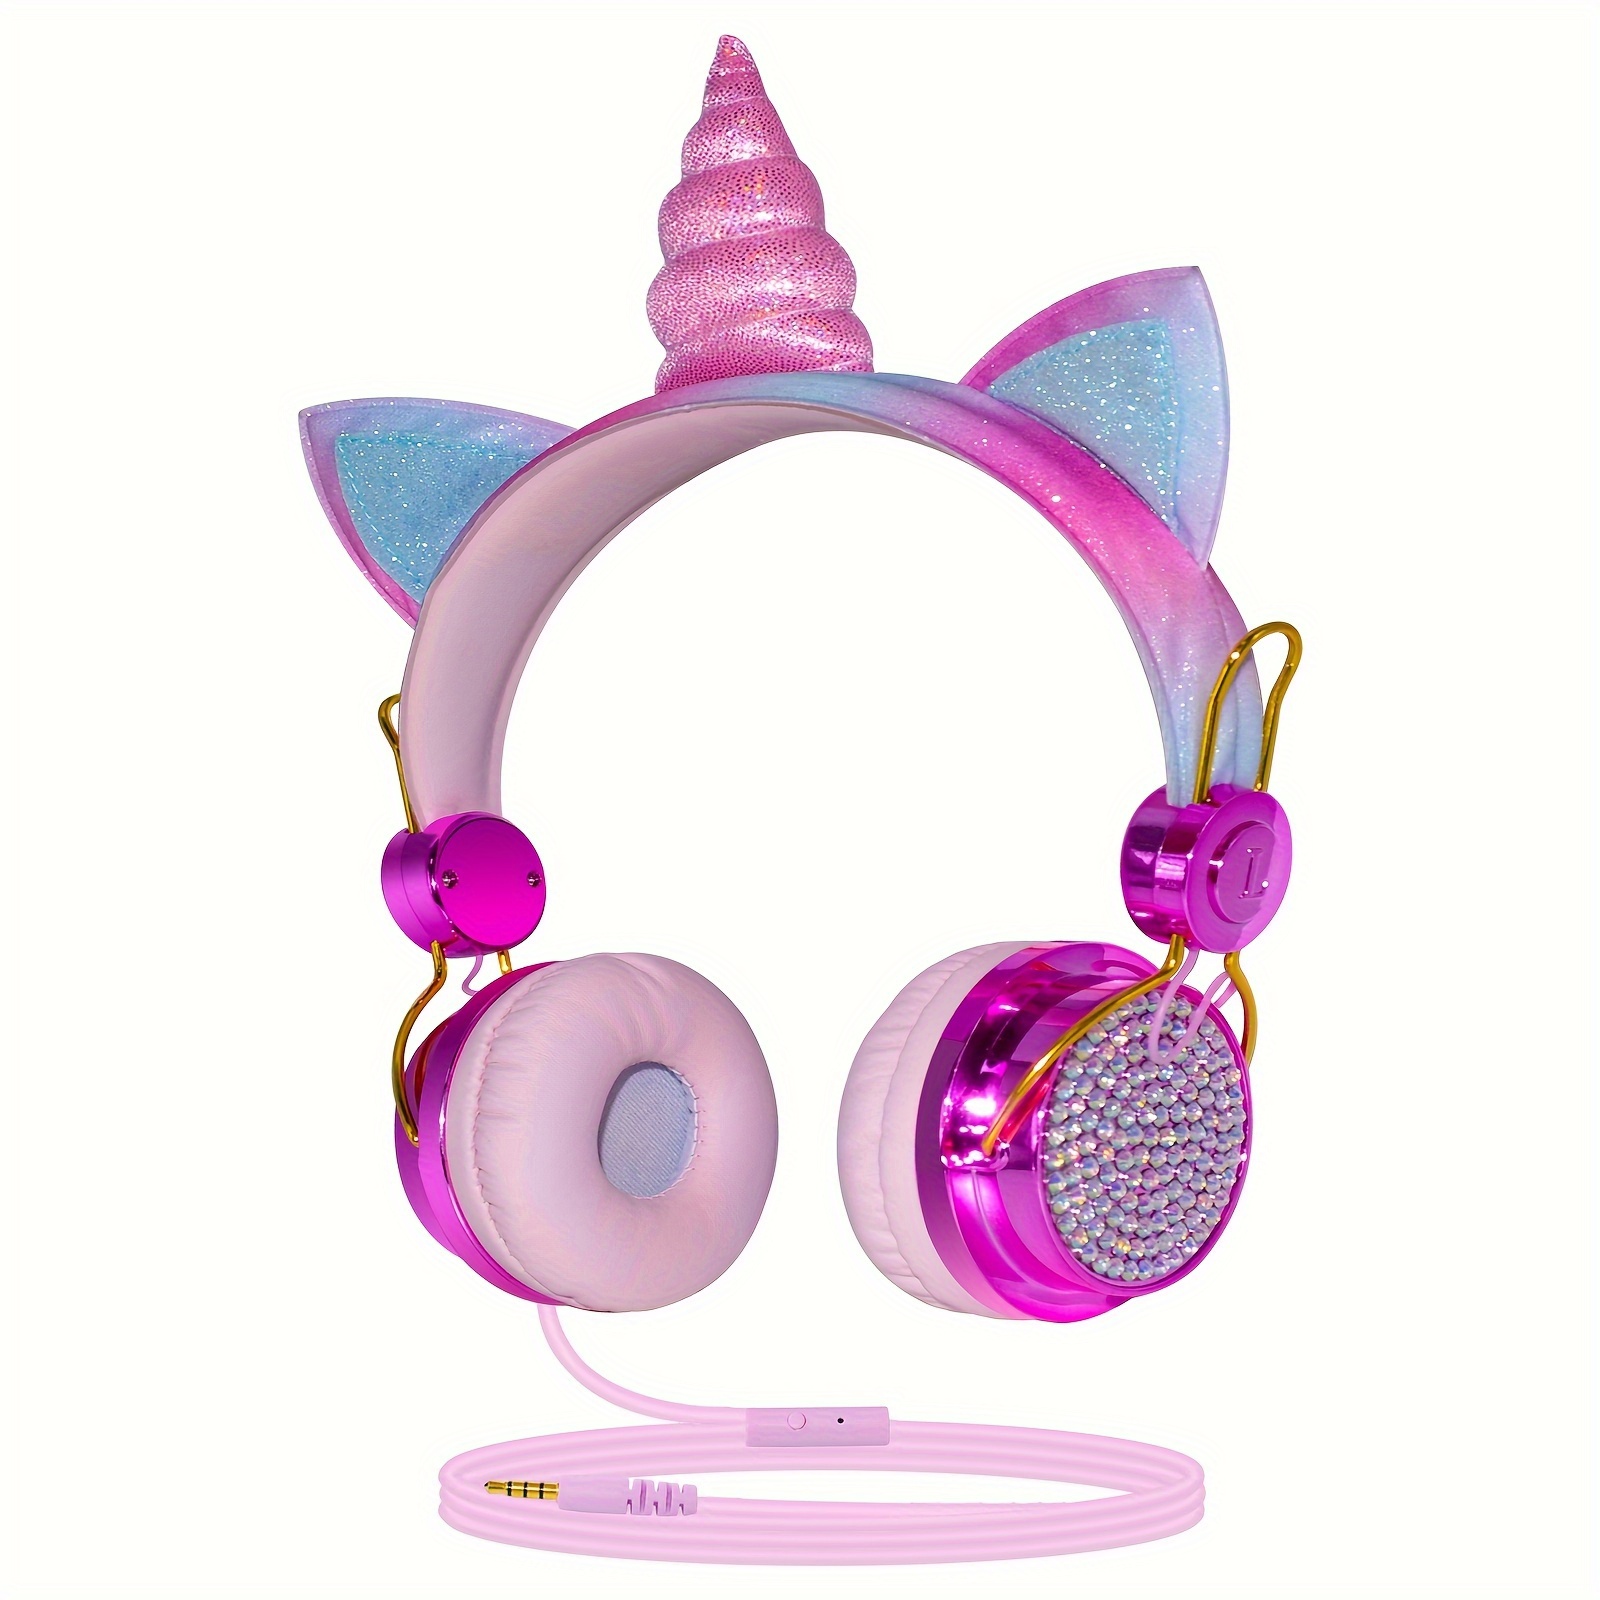 Auriculares inalámbricos con orejas de gato para niño y niña